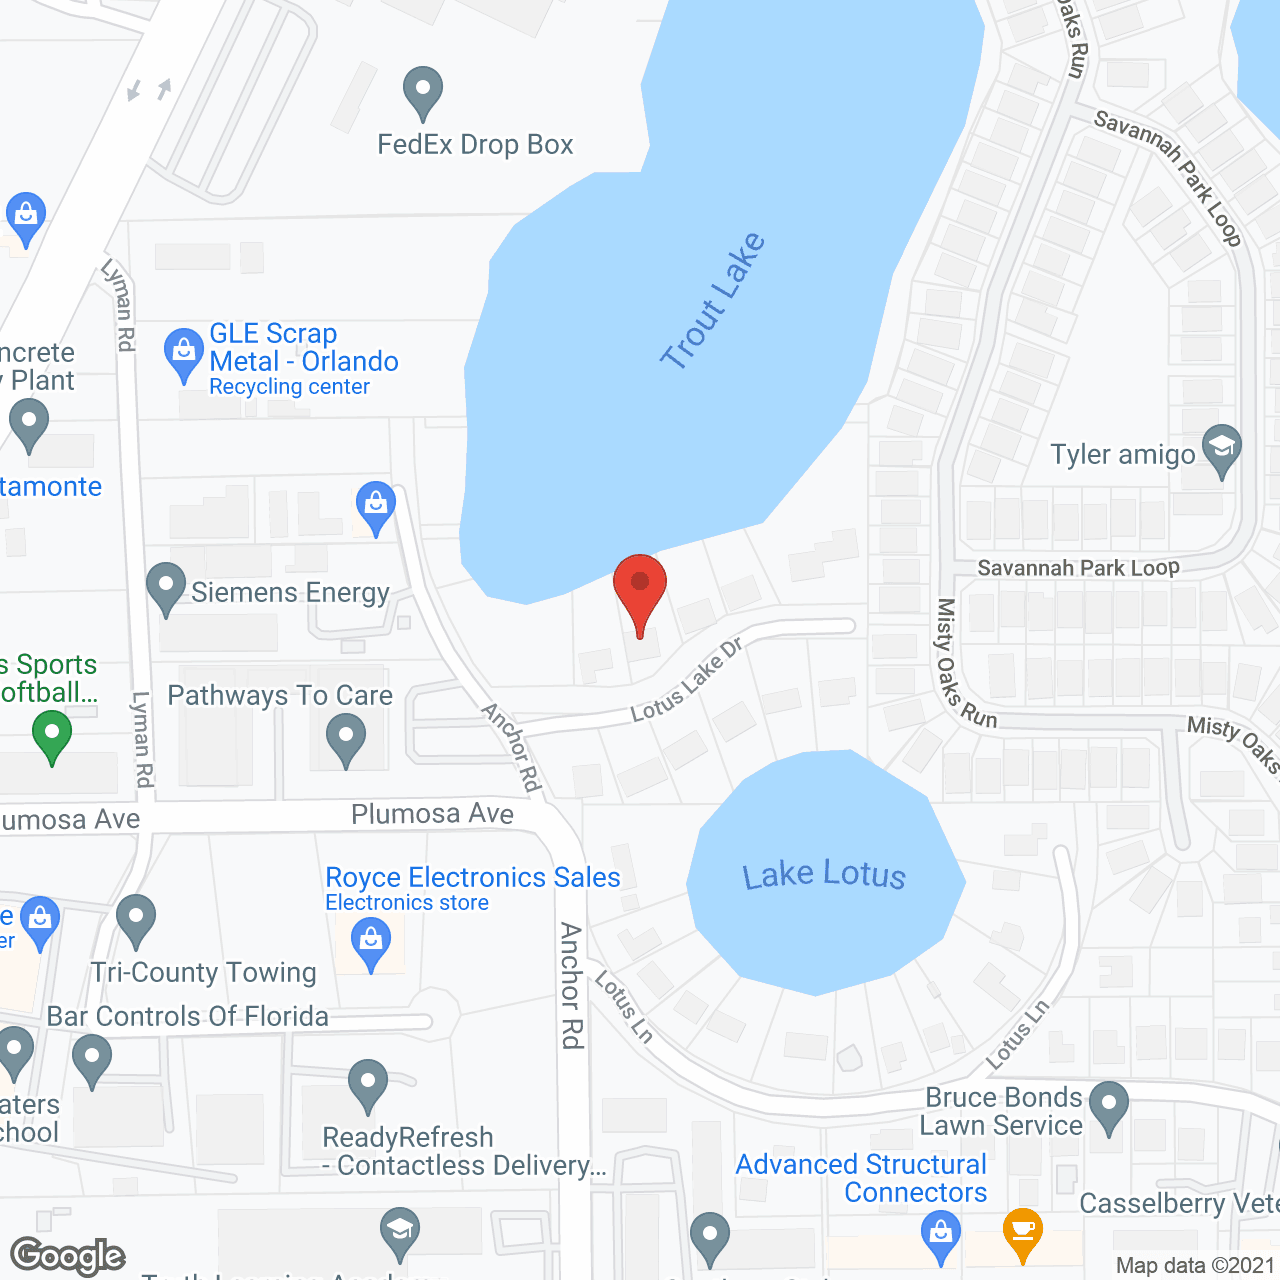 Lotus Lake Retirement Home in google map